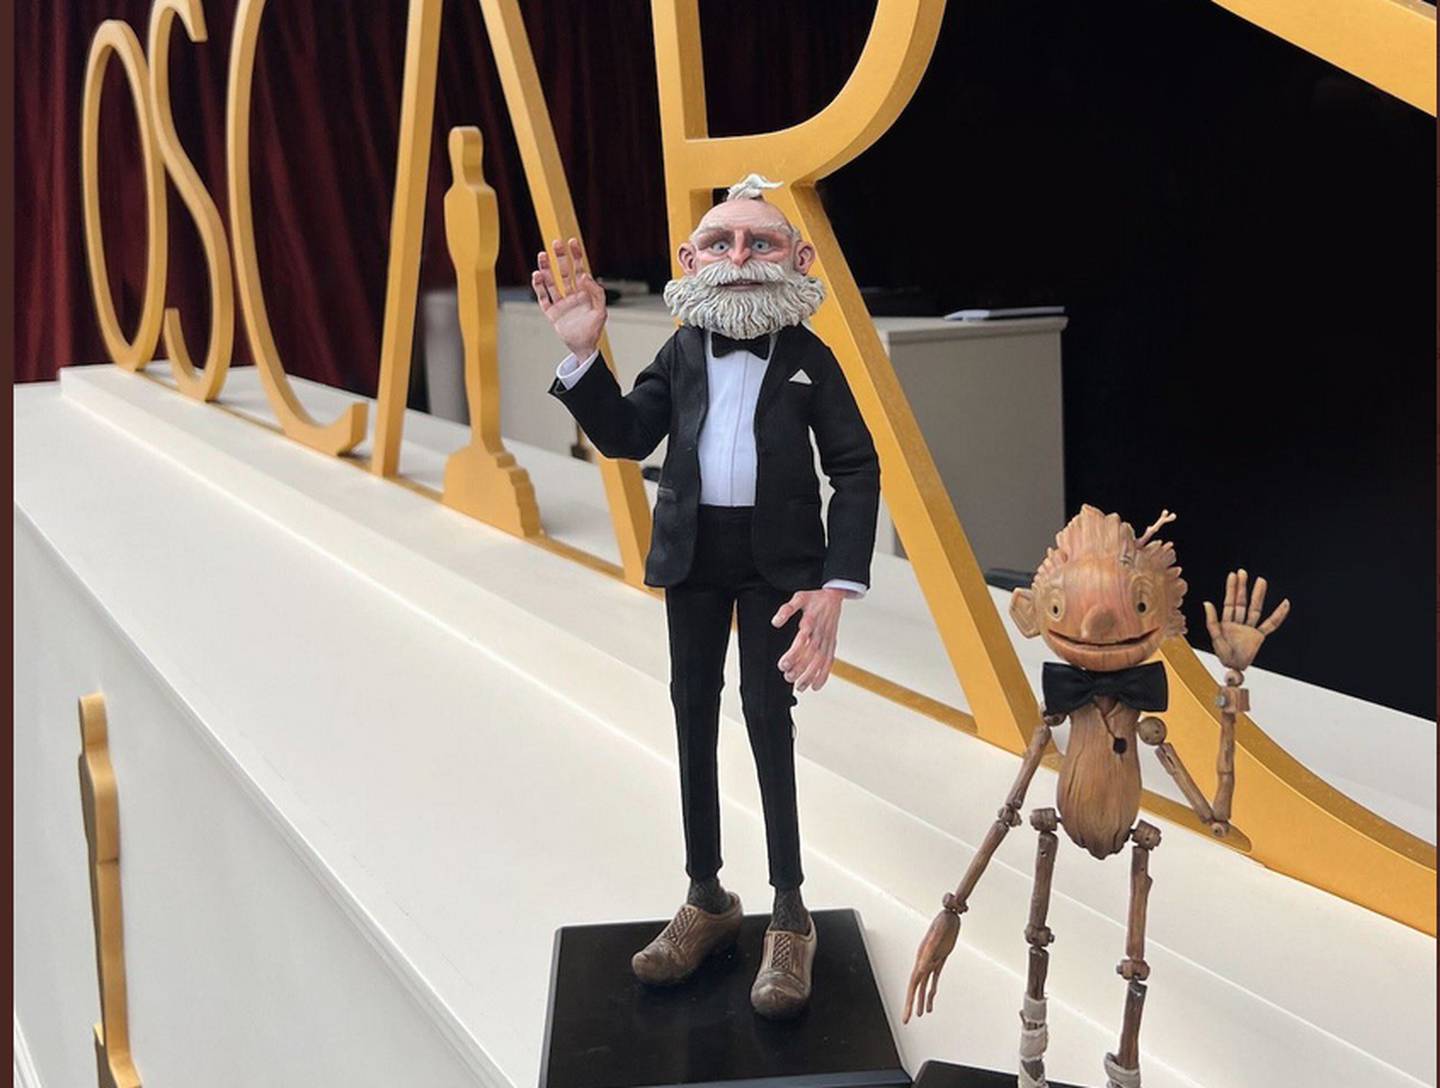 Gepeto y Pinocho sorprenden en la alfombra champaigne de los Óscar.